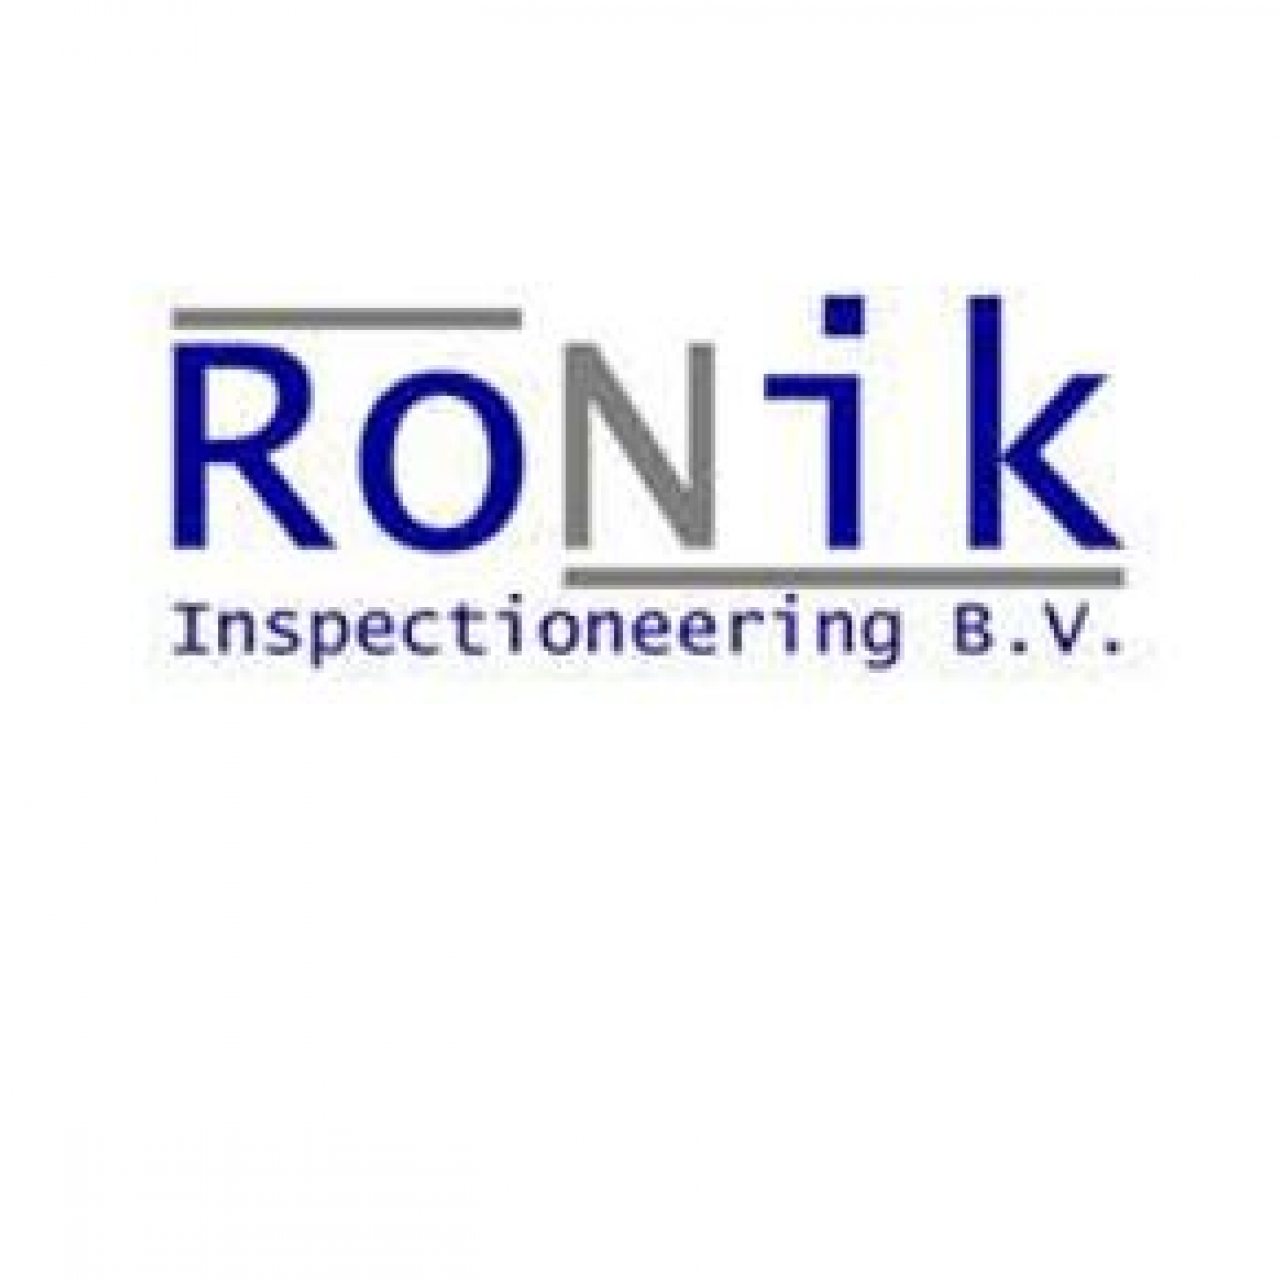 RoNik - logo